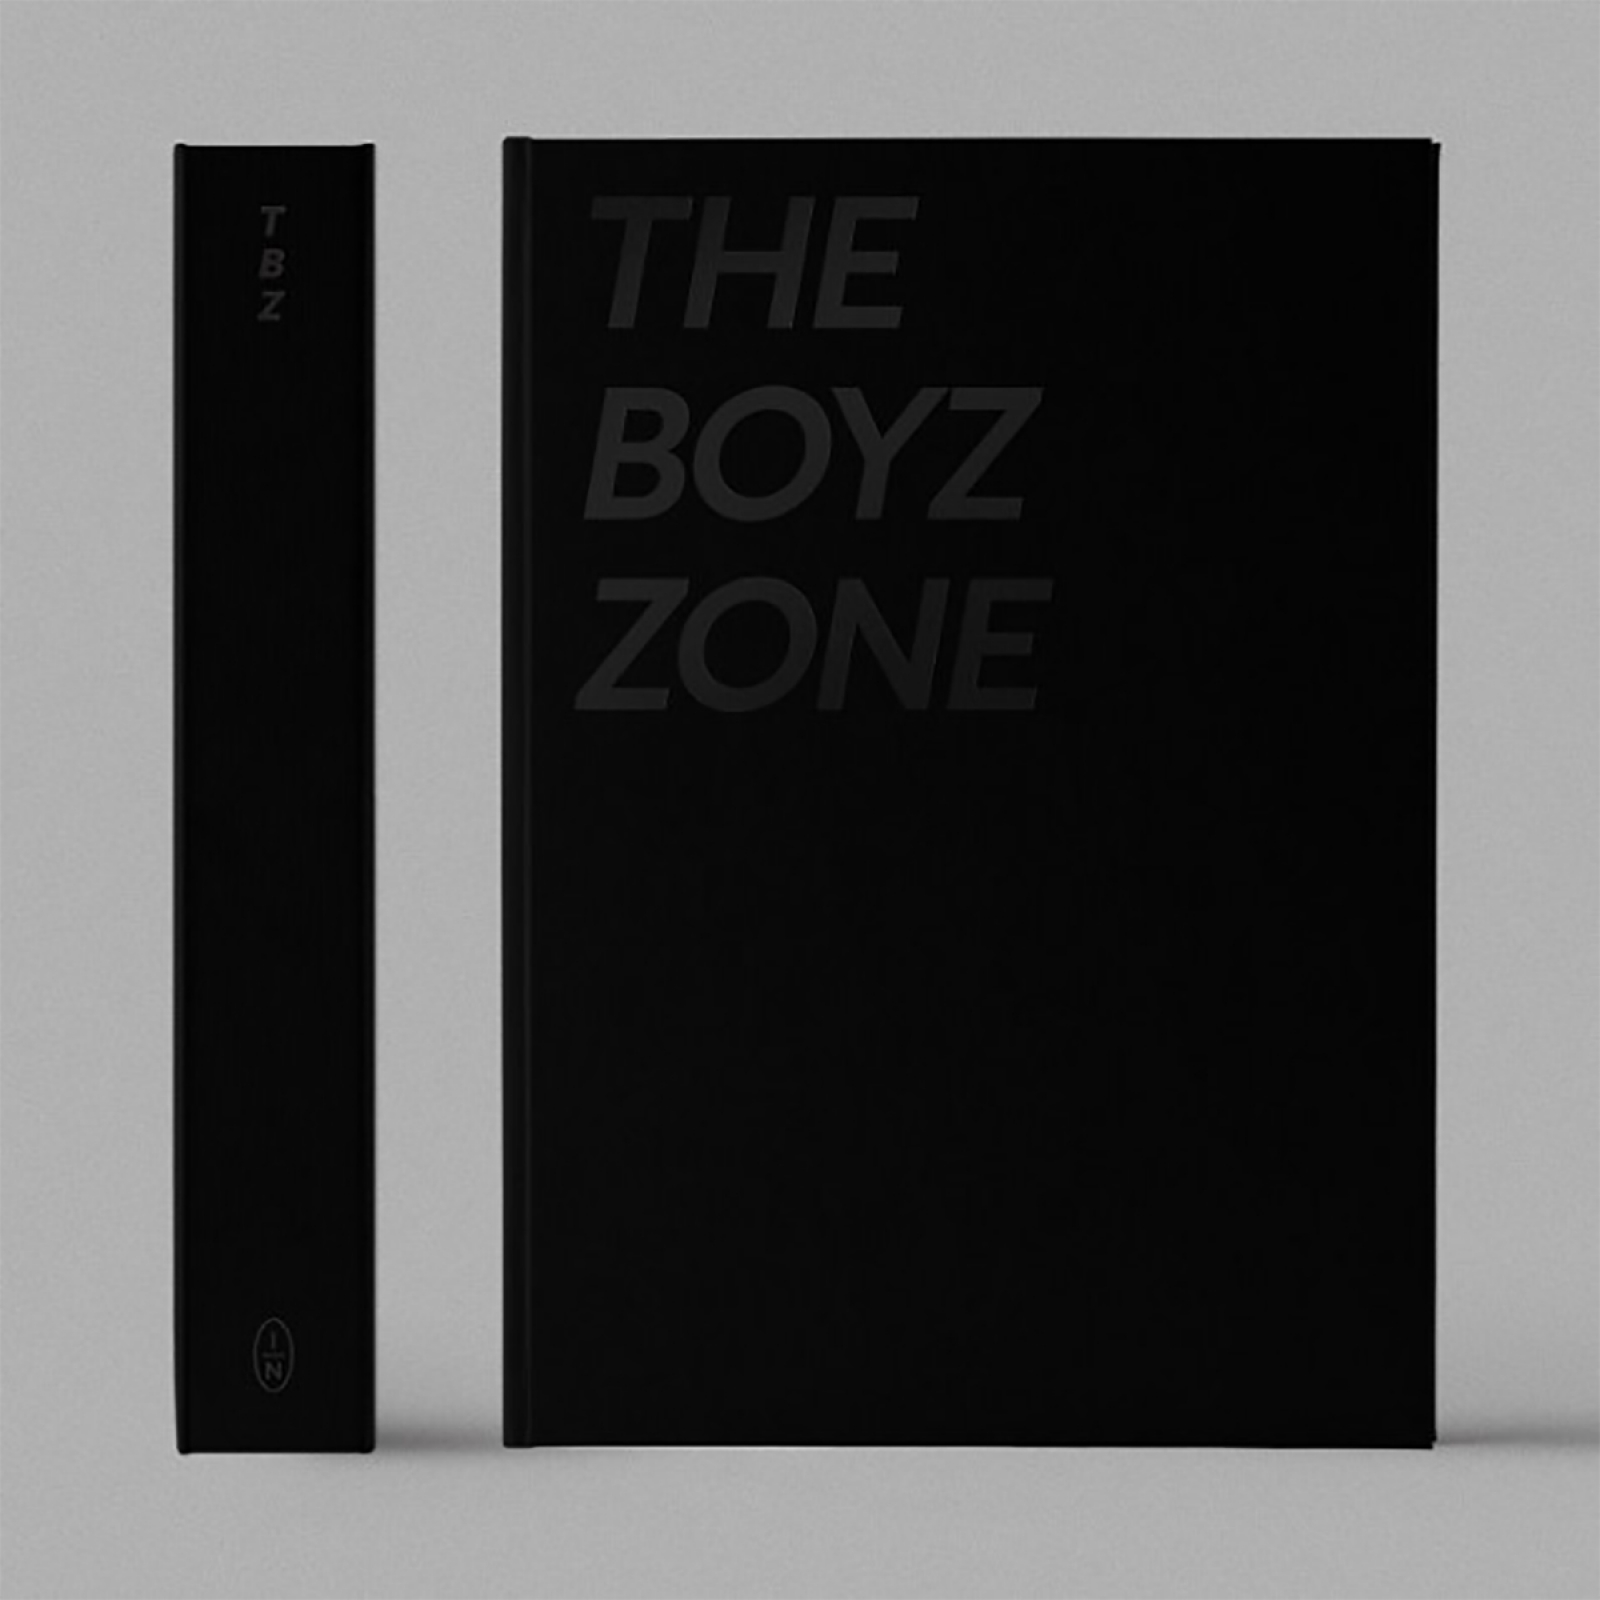 [全款] [写真集] THE BOYZ - THE BOYZ TOUR PHOTOBOOK [THE BOYZ ZONE]_nowisHYUNJAE_李贤在